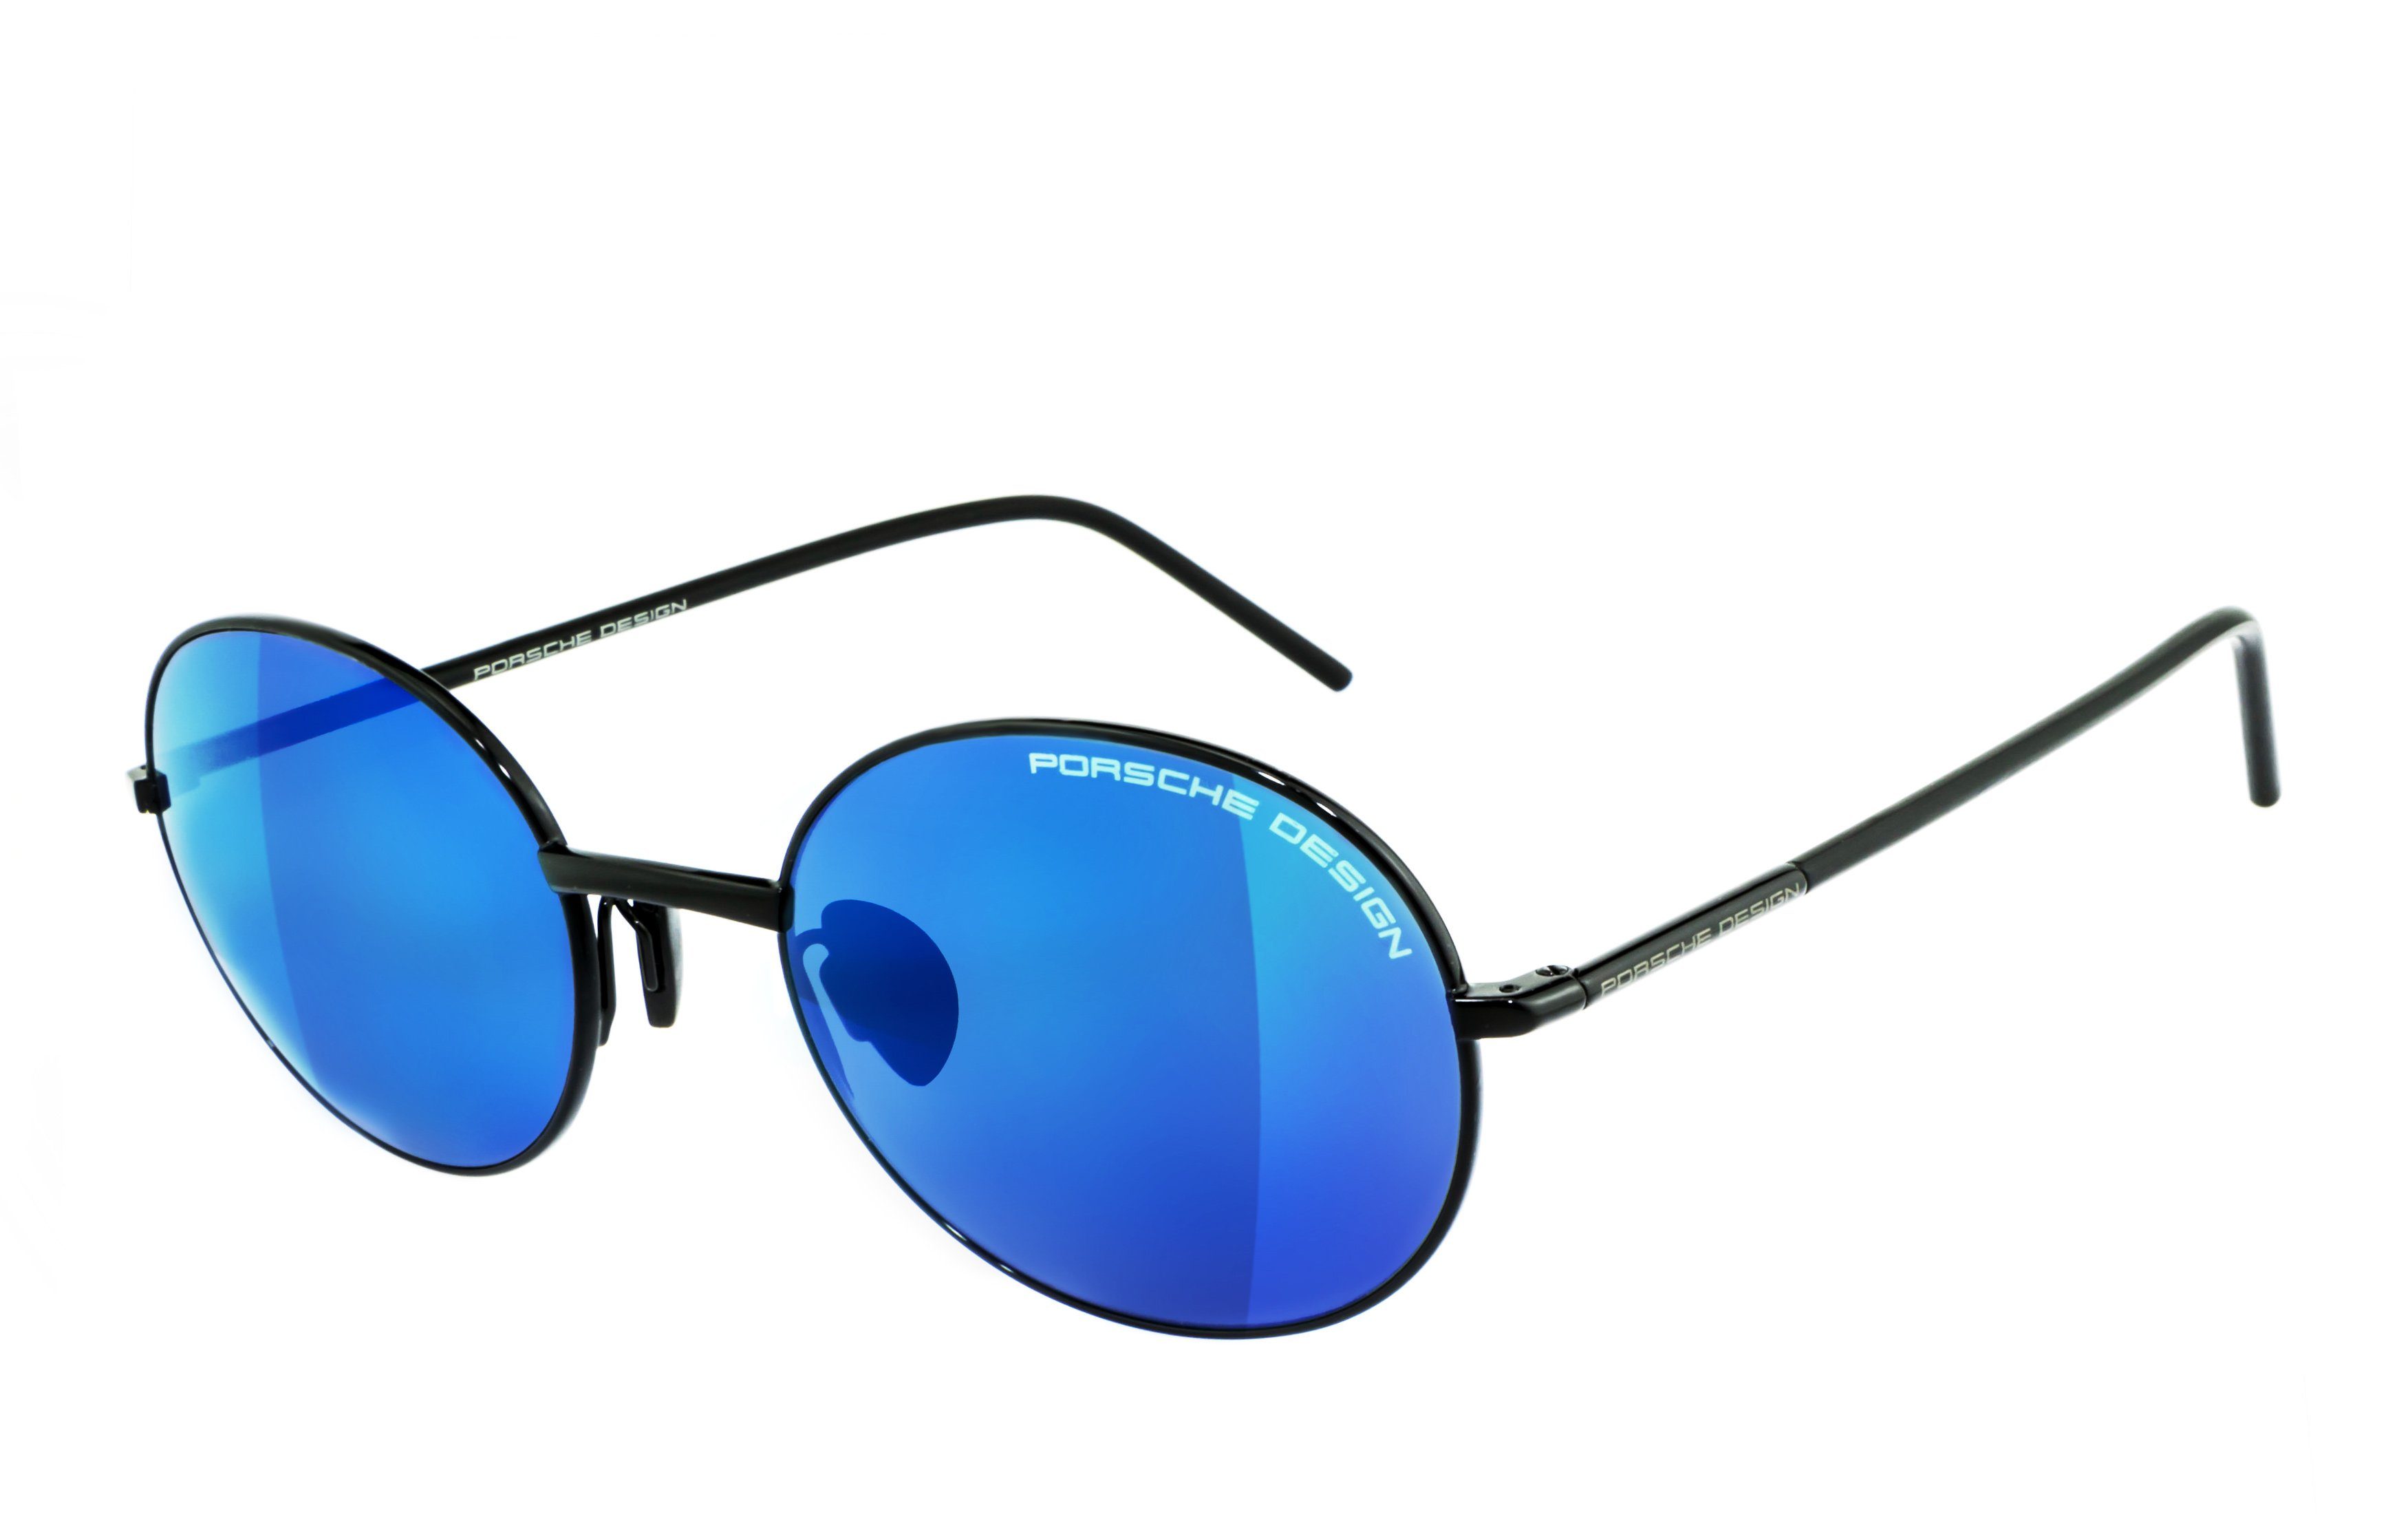 PORSCHE Design Sonnenbrille »P8631 A«, UV400 Schutzfilter für 100% UVA-,  UVB- & UVC-Schutz online kaufen | OTTO